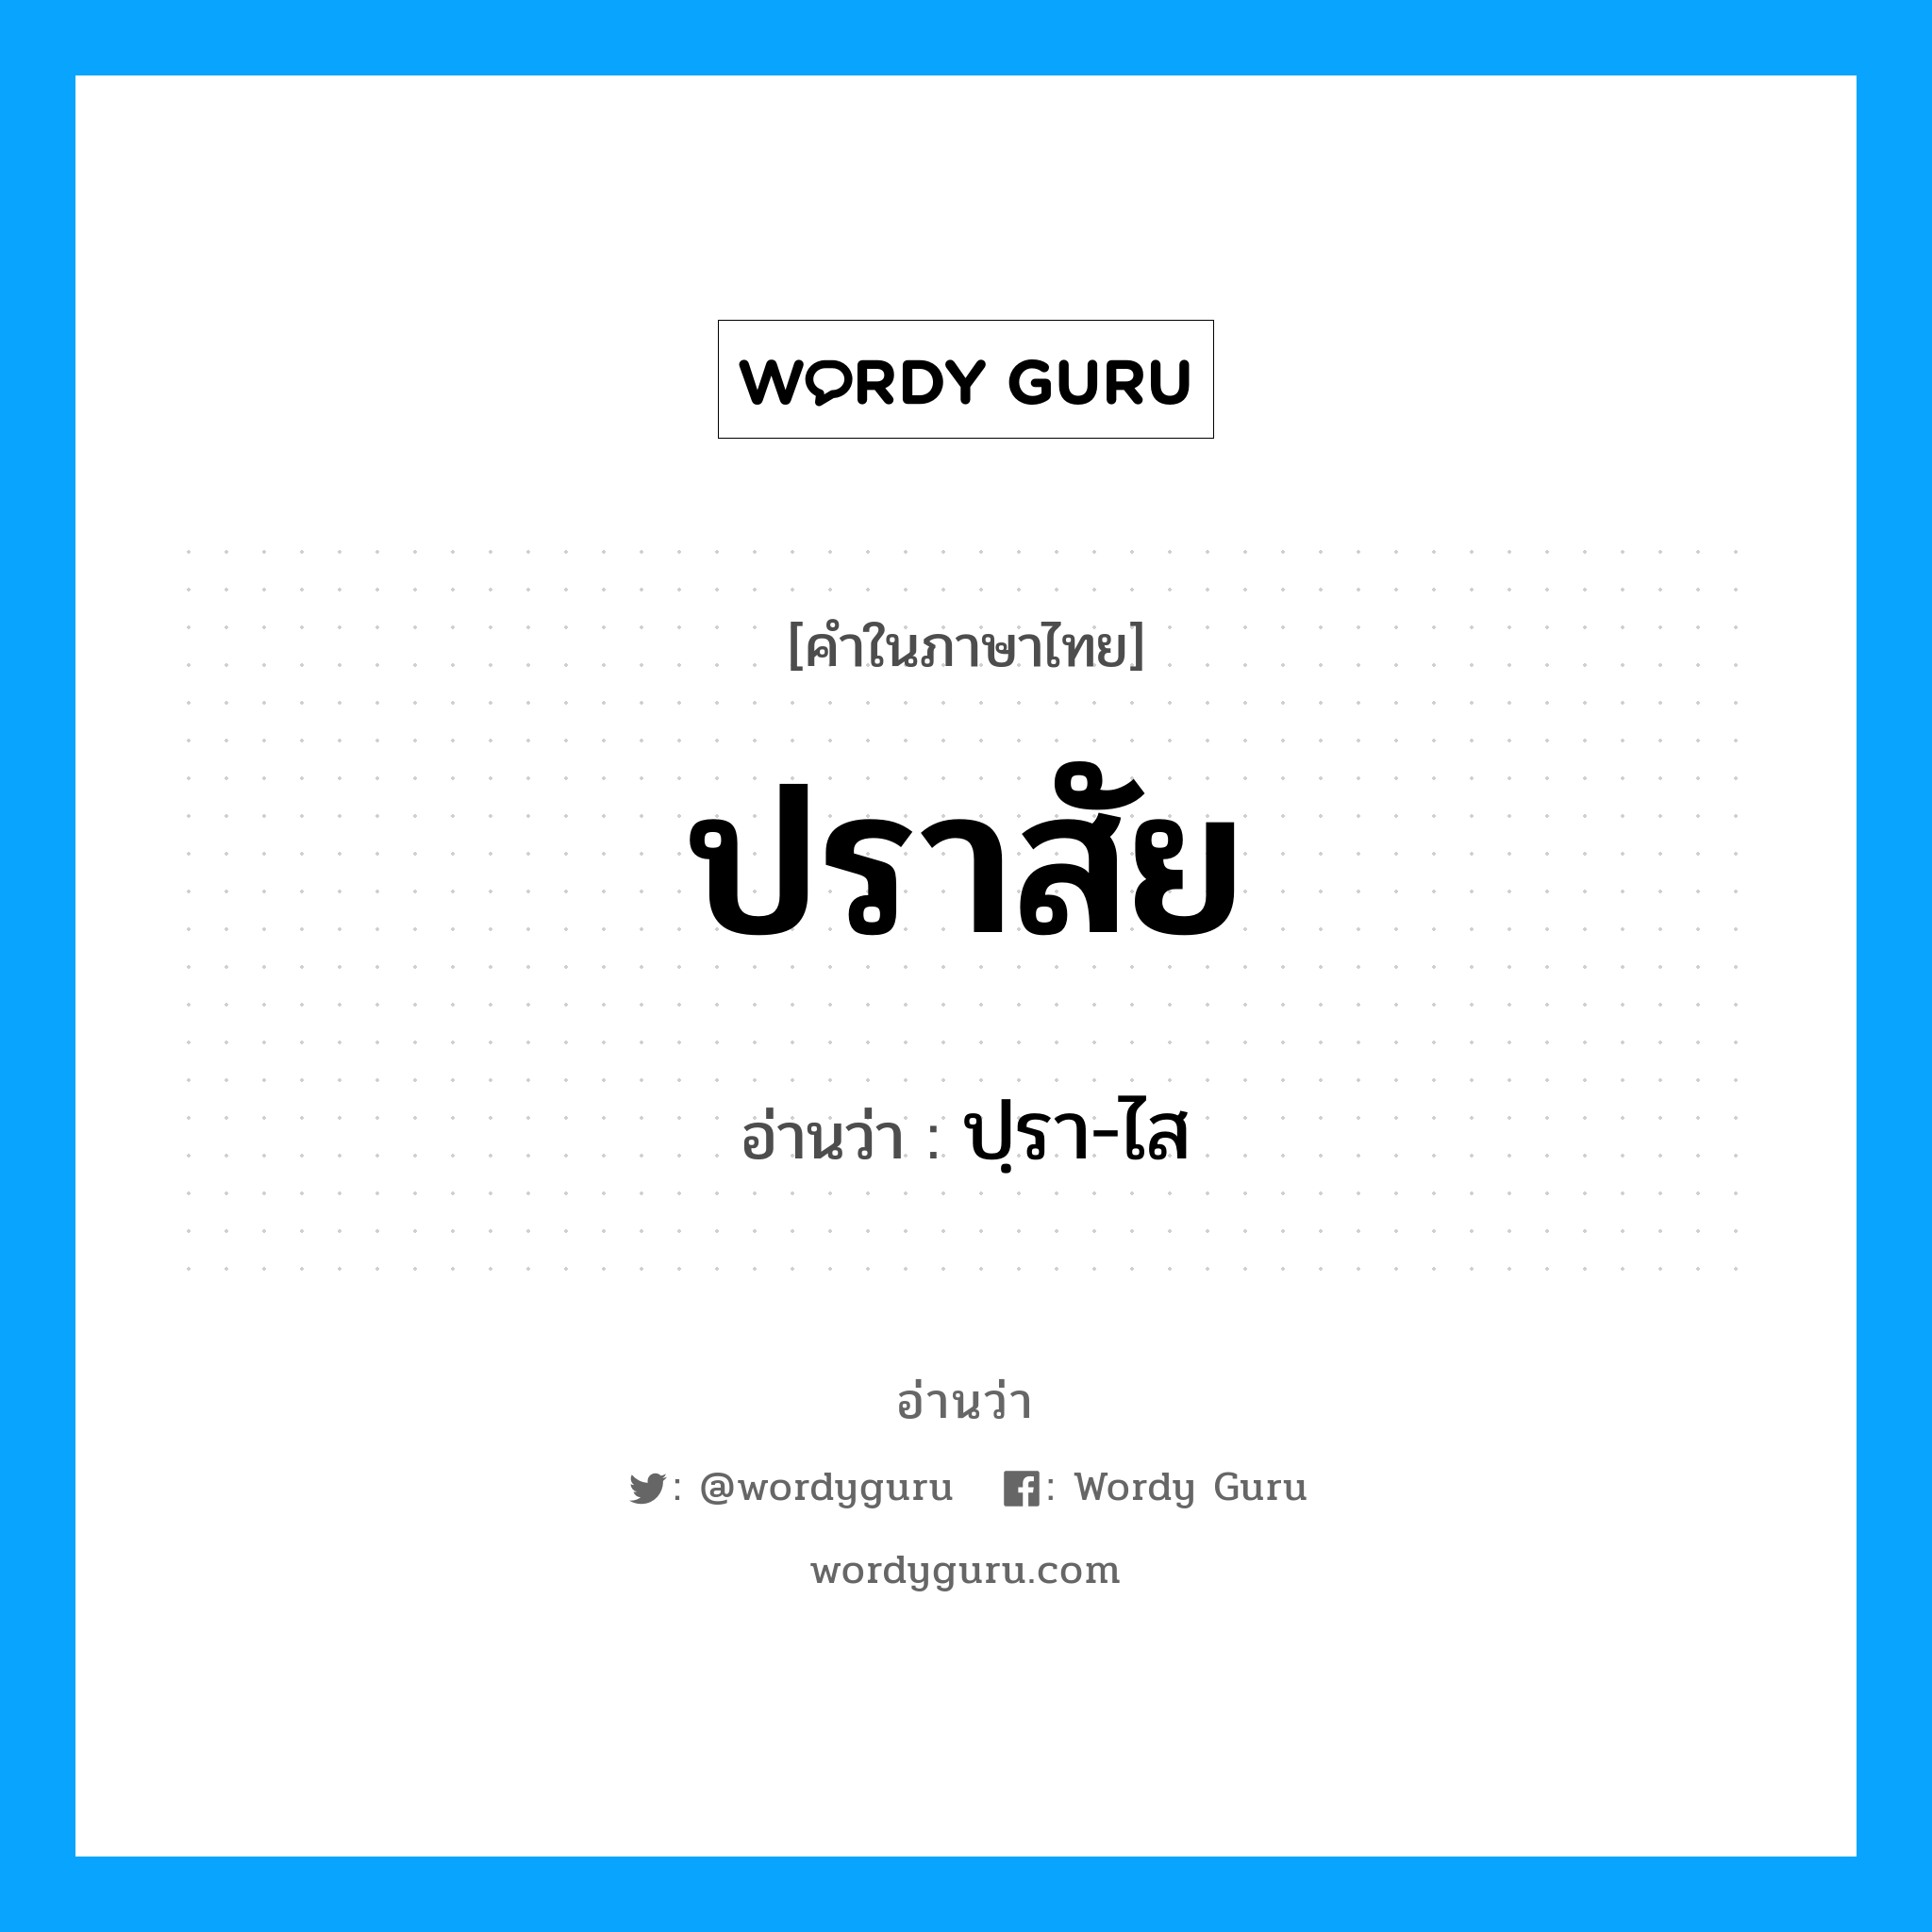 ปฺรา-ไส เป็นคำอ่านของคำไหน?, คำในภาษาไทย ปฺรา-ไส อ่านว่า ปราสัย